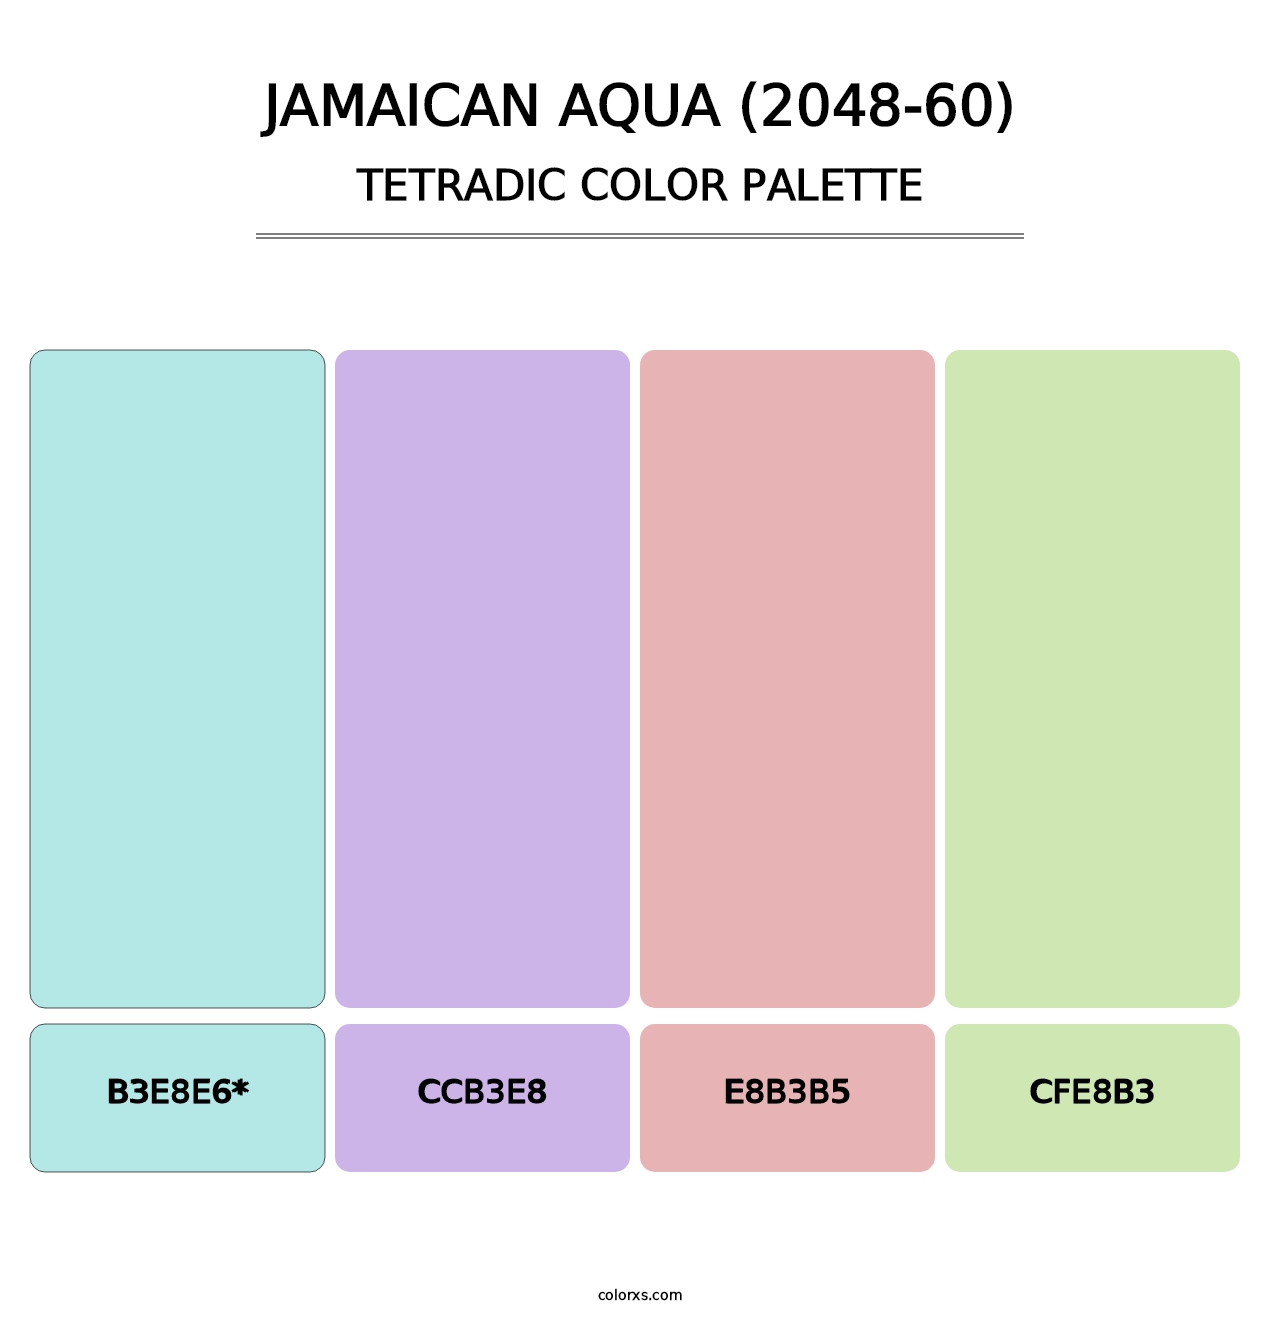 Jamaican Aqua (2048-60) - Tetradic Color Palette